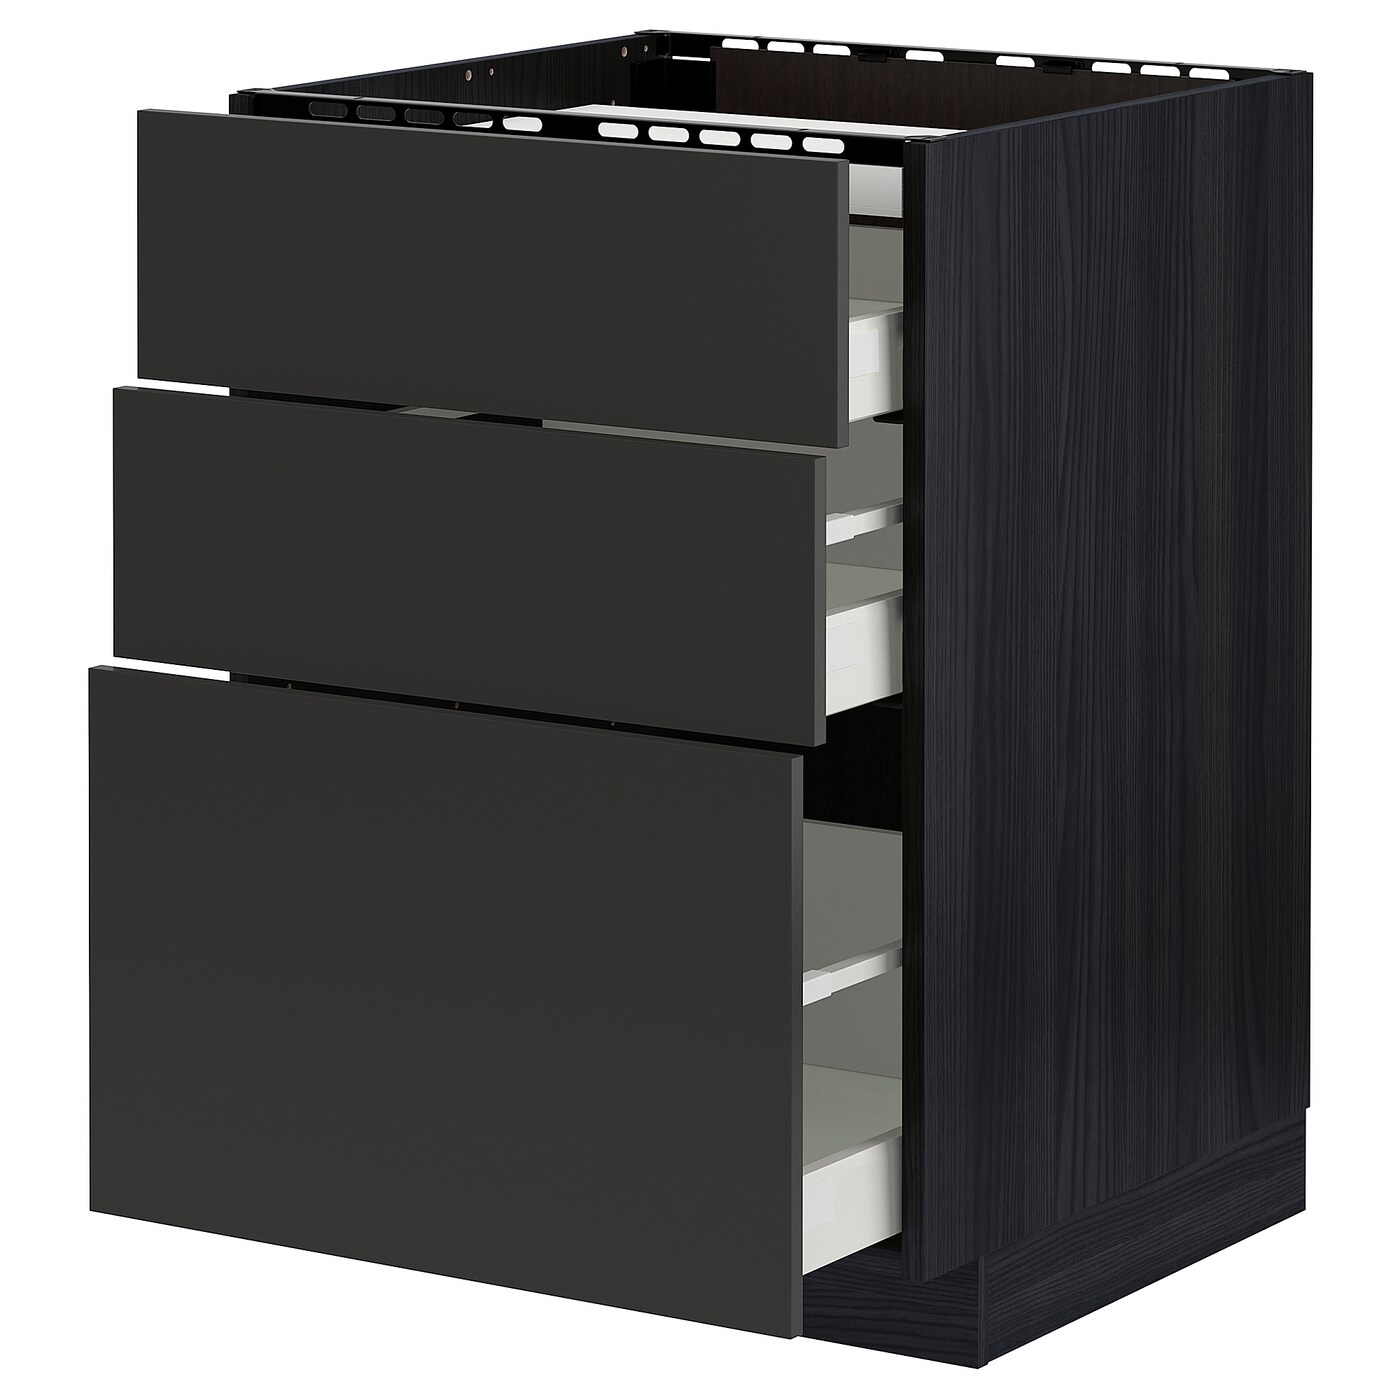 Напольный кухонный шкаф  - IKEA METOD MAXIMERA, 88x62x60см, черный/темно-серый, МЕТОД МАКСИМЕРА ИКЕА